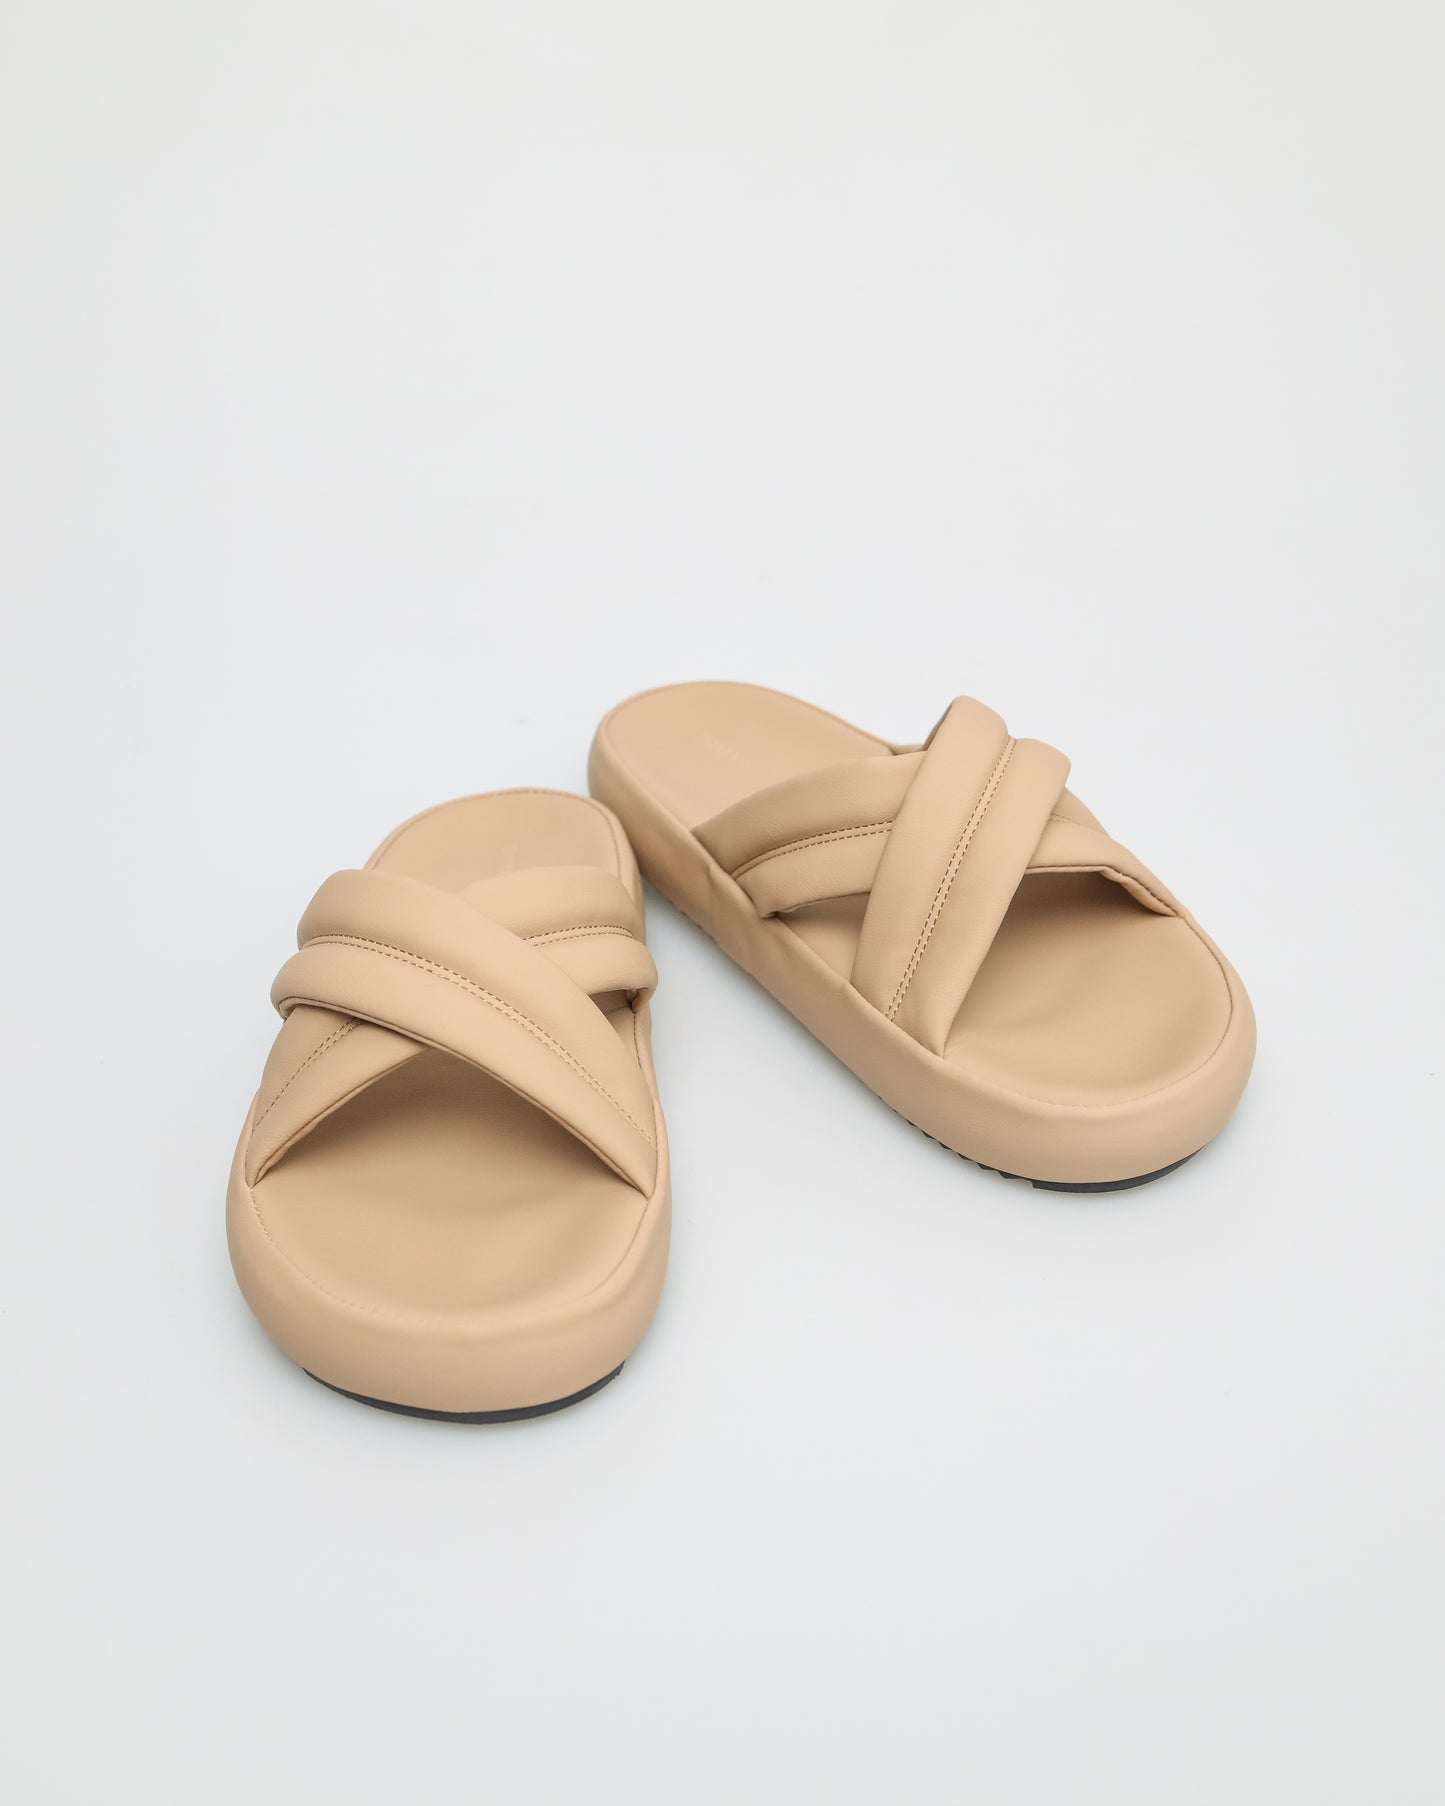 Tomaz NN268 Ladies Padded X Strap Sandals (Beige)